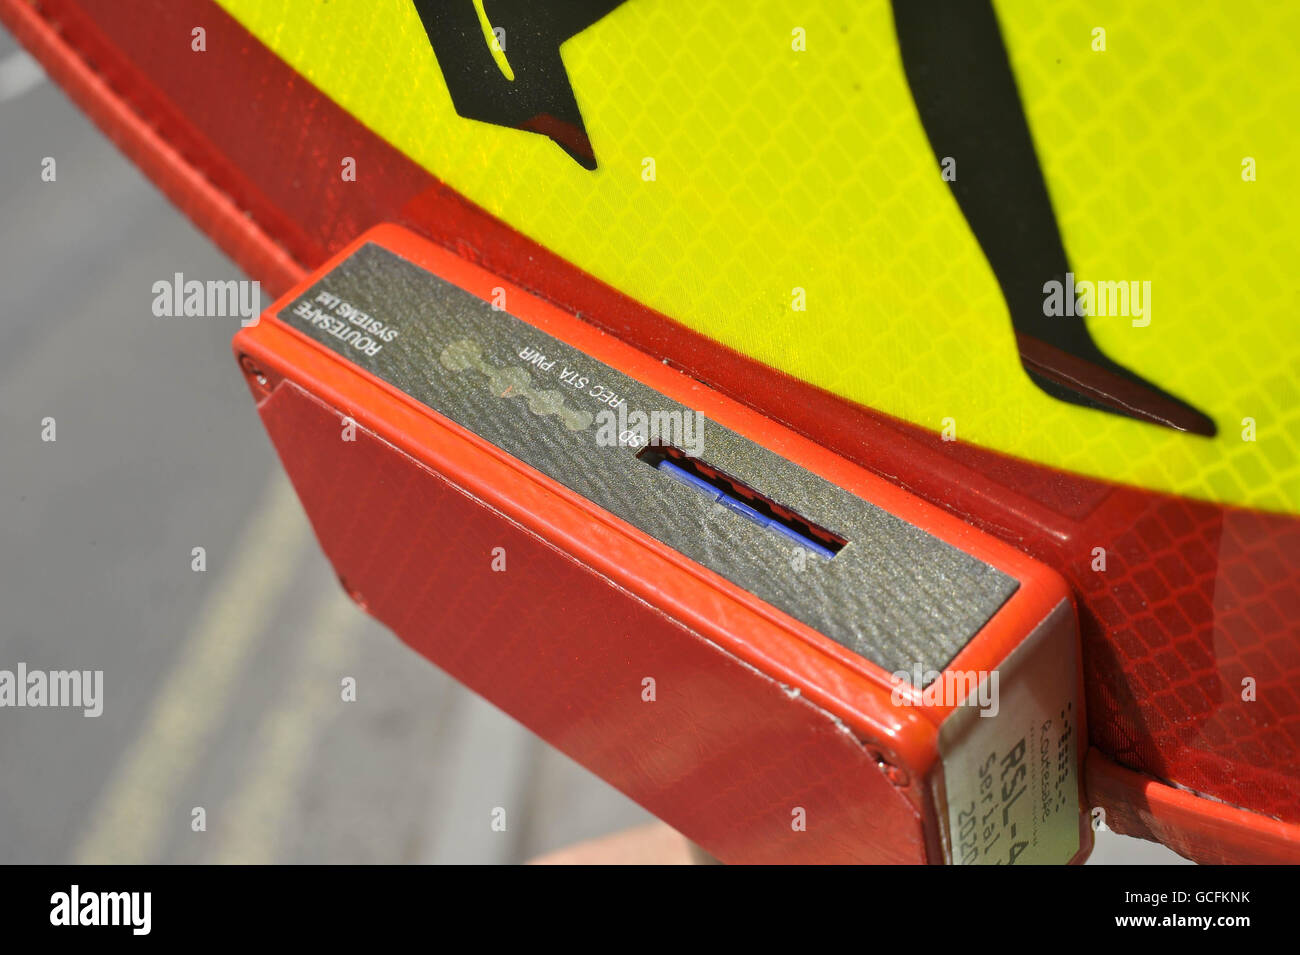 Der SD-Speicherkartenleser auf einem neuen Hi-Tech-Lollipop-Stick, der CCTV-Video integriert, um alle Autofahrer, die das Gesetz brechen oder aggressiv zu erfassen, zeigt, Es ist der erste Prozess in der Südwestregion des Vereinigten Königreichs. Stockfoto